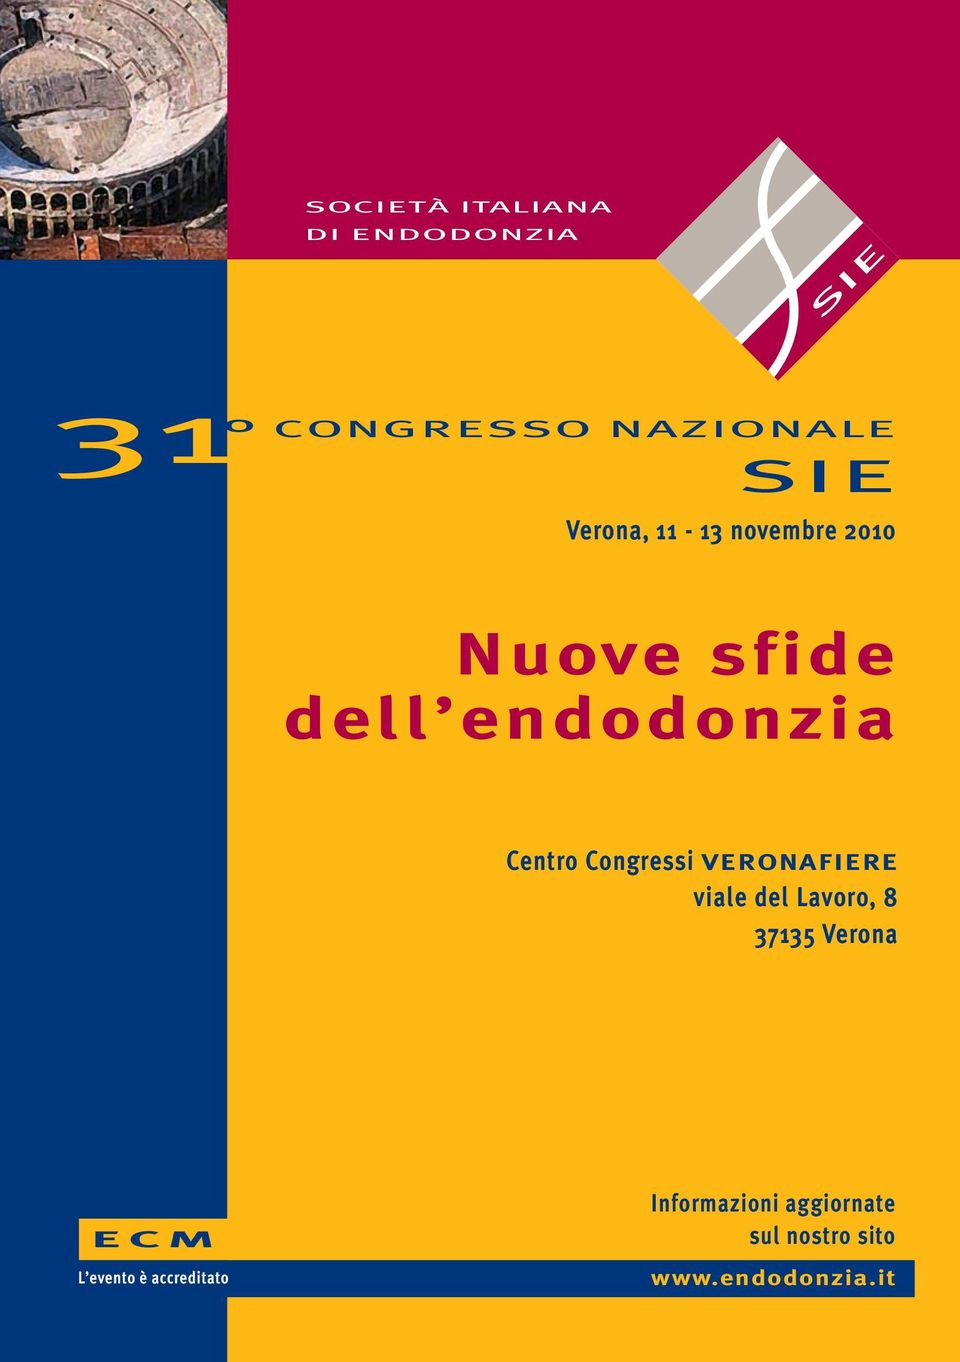 Congressi VERONAFIERE viale del Lavoro, 8 37135 Verona ECM L